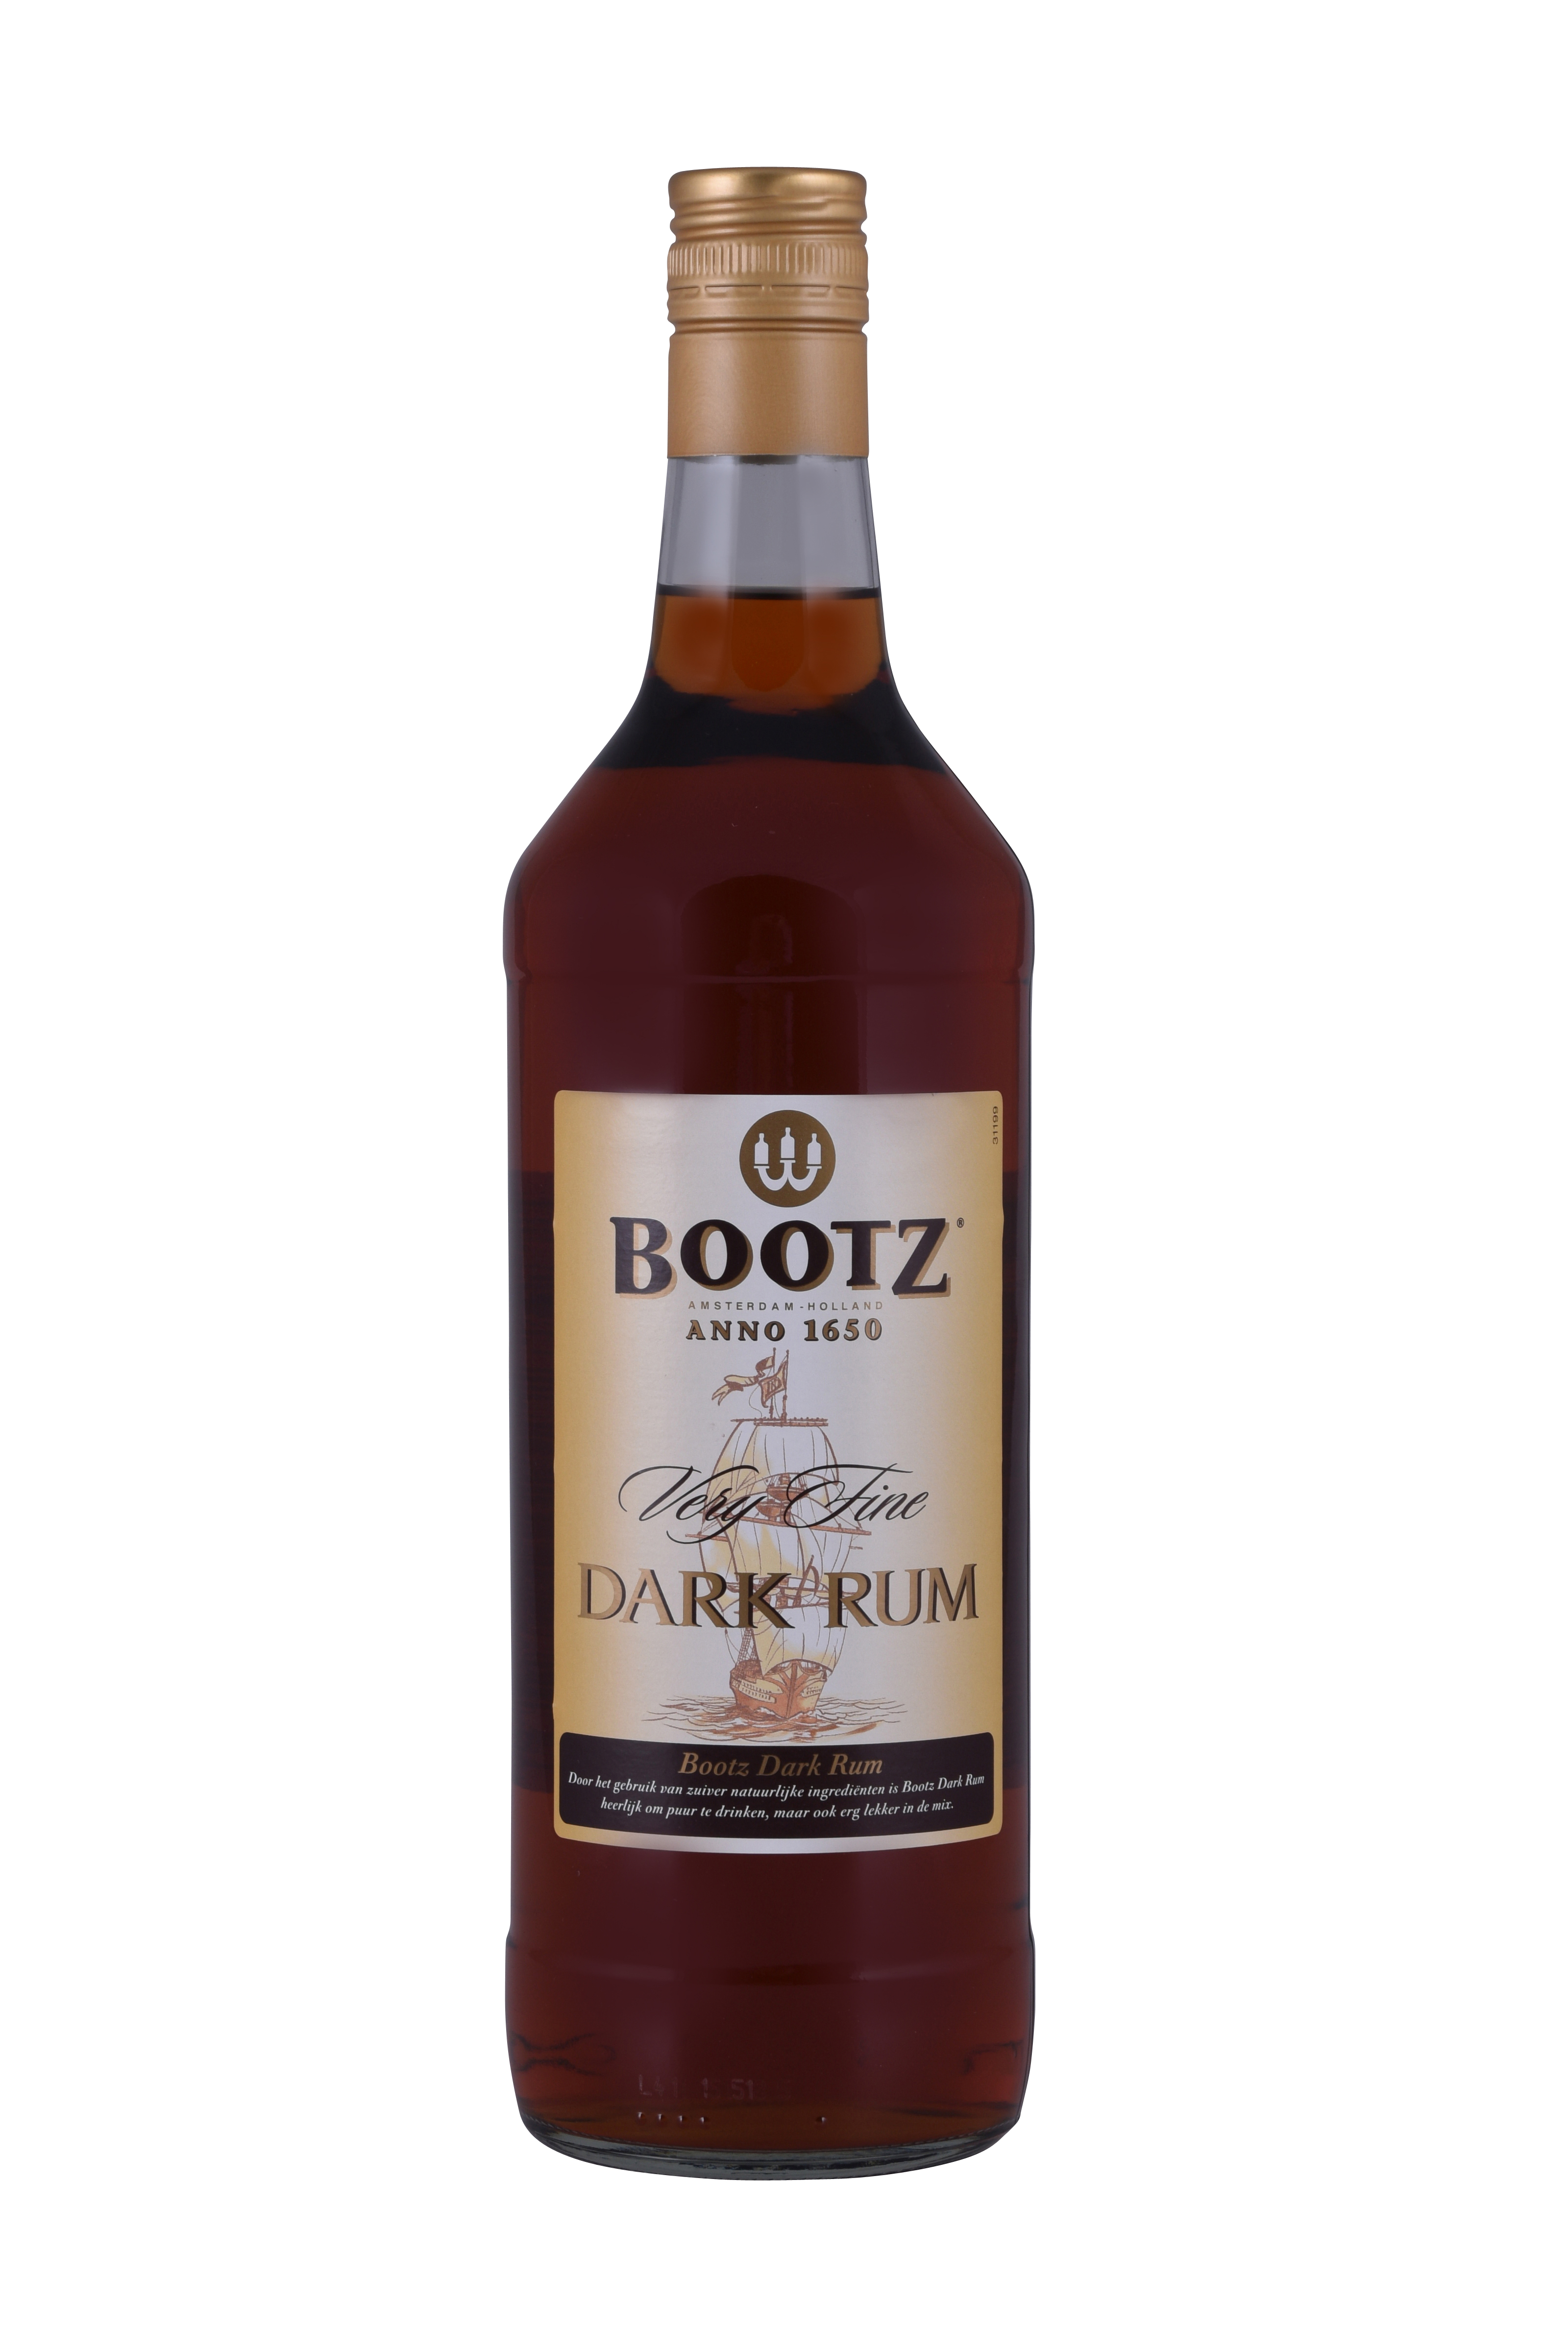 54590 Bootz rum brown 1ltr.